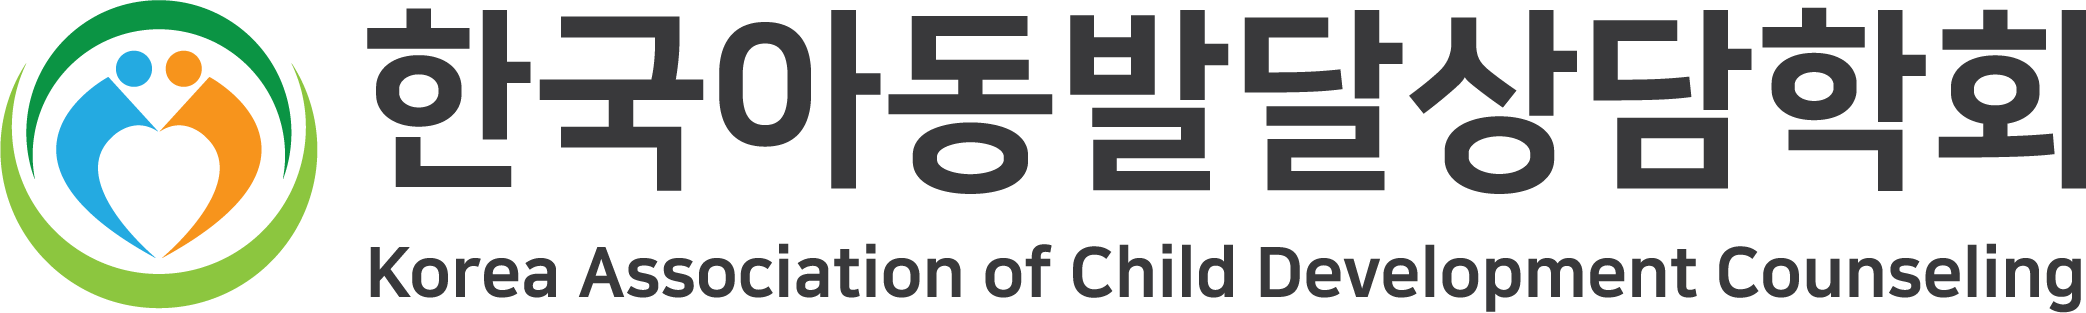 한국아동발달상담학회 LOGO